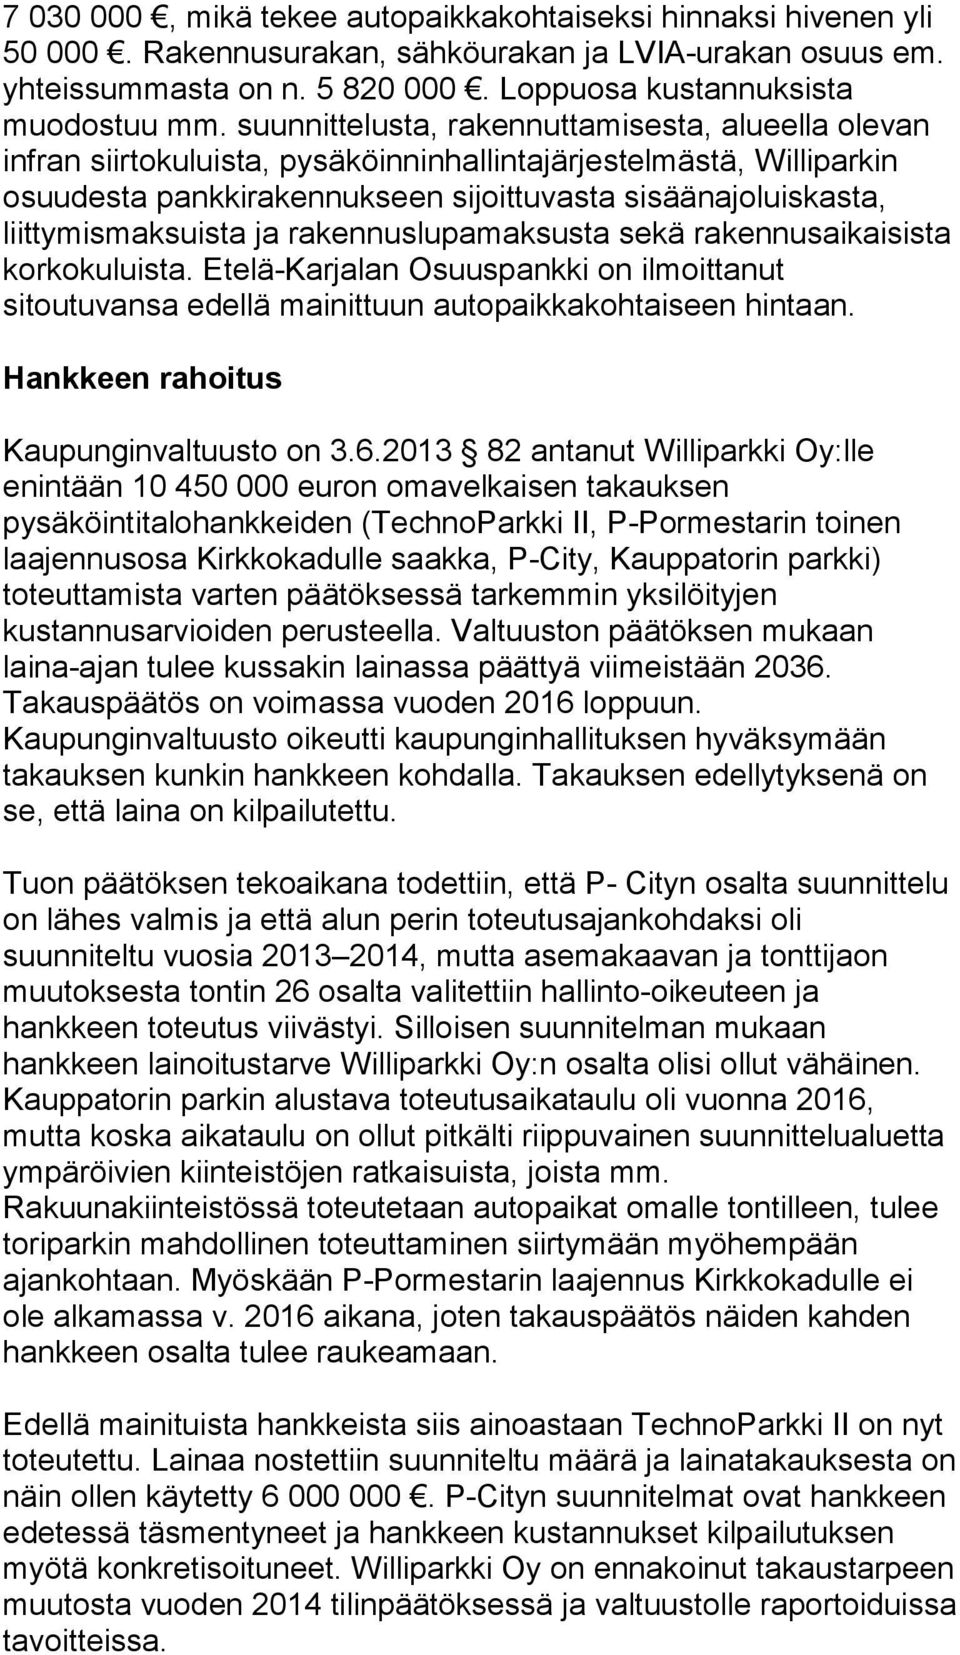 liittymismaksuista ja rakennuslupamaksusta sekä rakennusaikaisista korkokuluista. Etelä-Karjalan Osuuspankki on ilmoittanut sitoutuvansa edellä mainittuun autopaikkakohtaiseen hintaan.